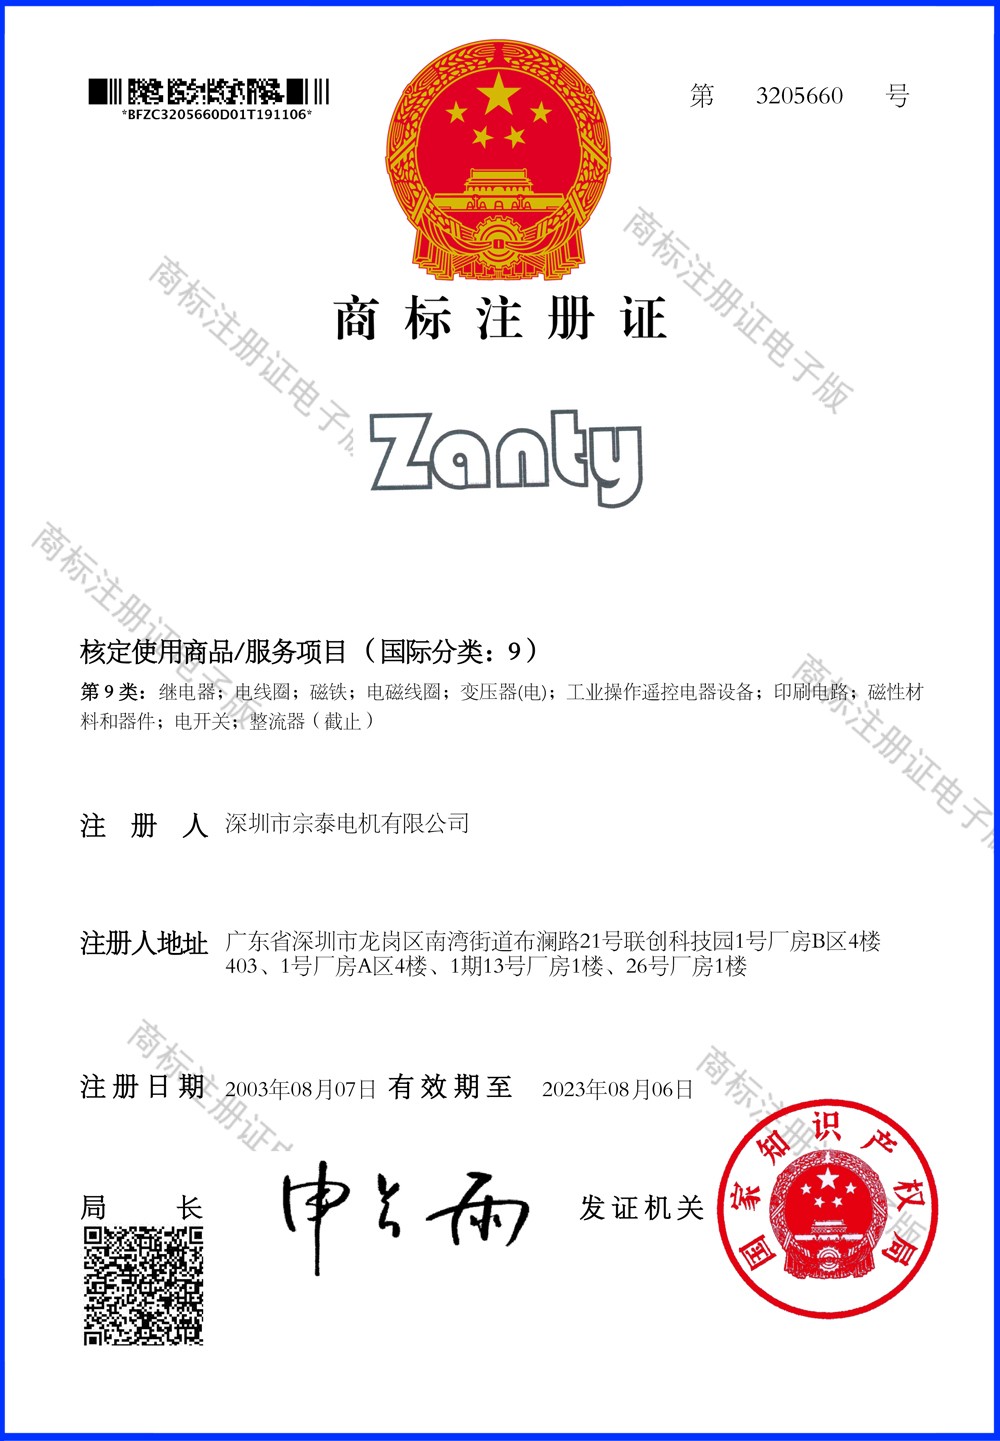 Zanty商標登録証明書1